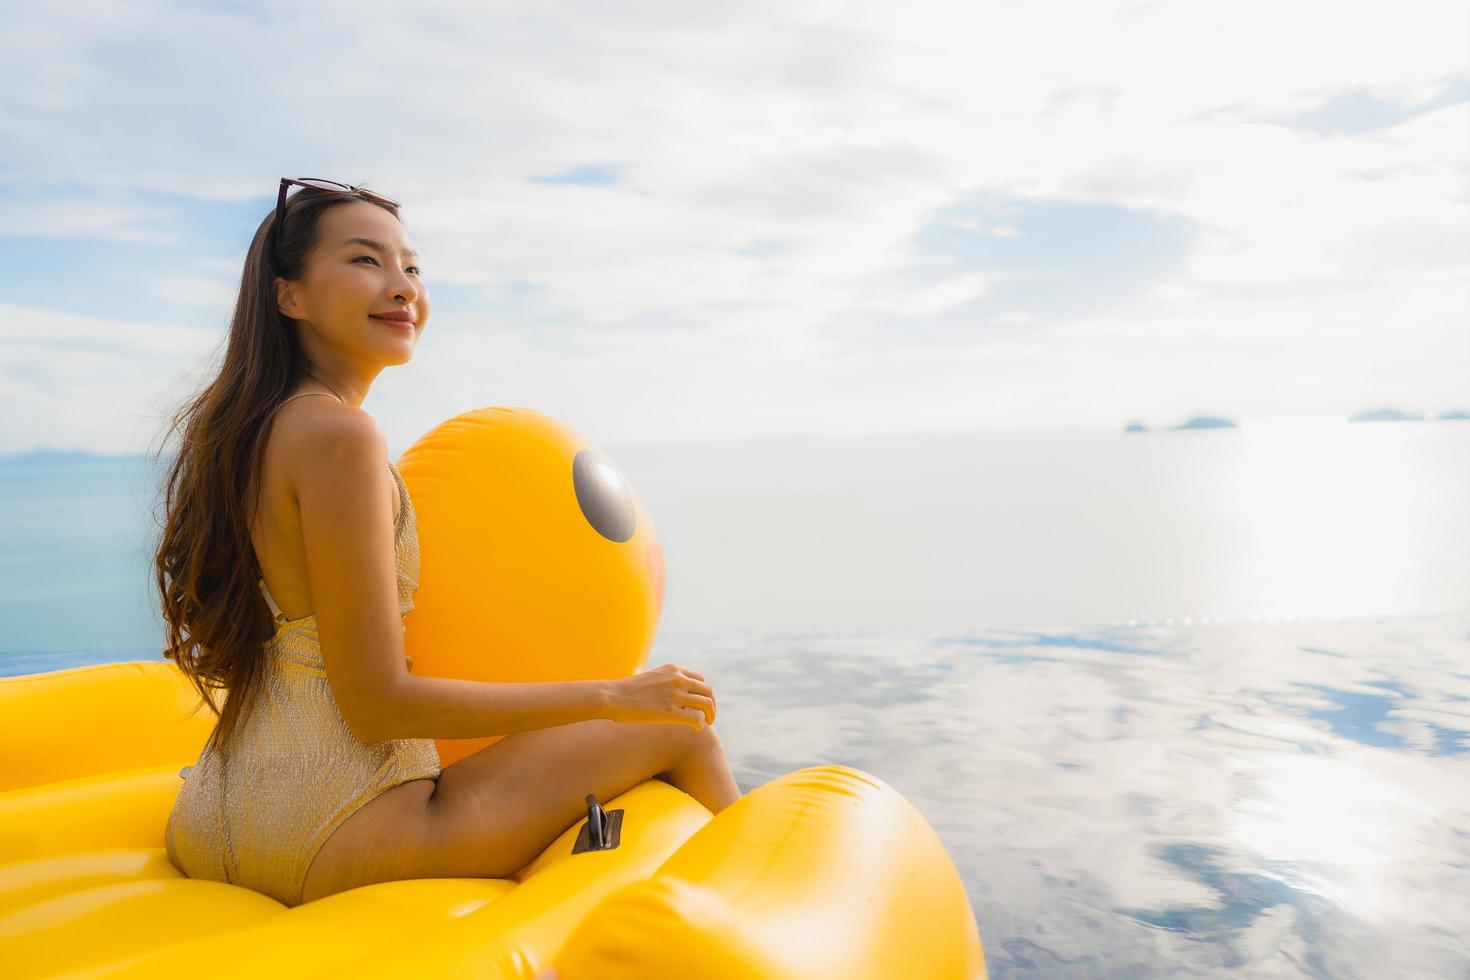 Ritratto di giovane donna asiatica su galleggiante gonfiabile anatra gialla intorno alla piscina all'aperto in hotel e resort foto